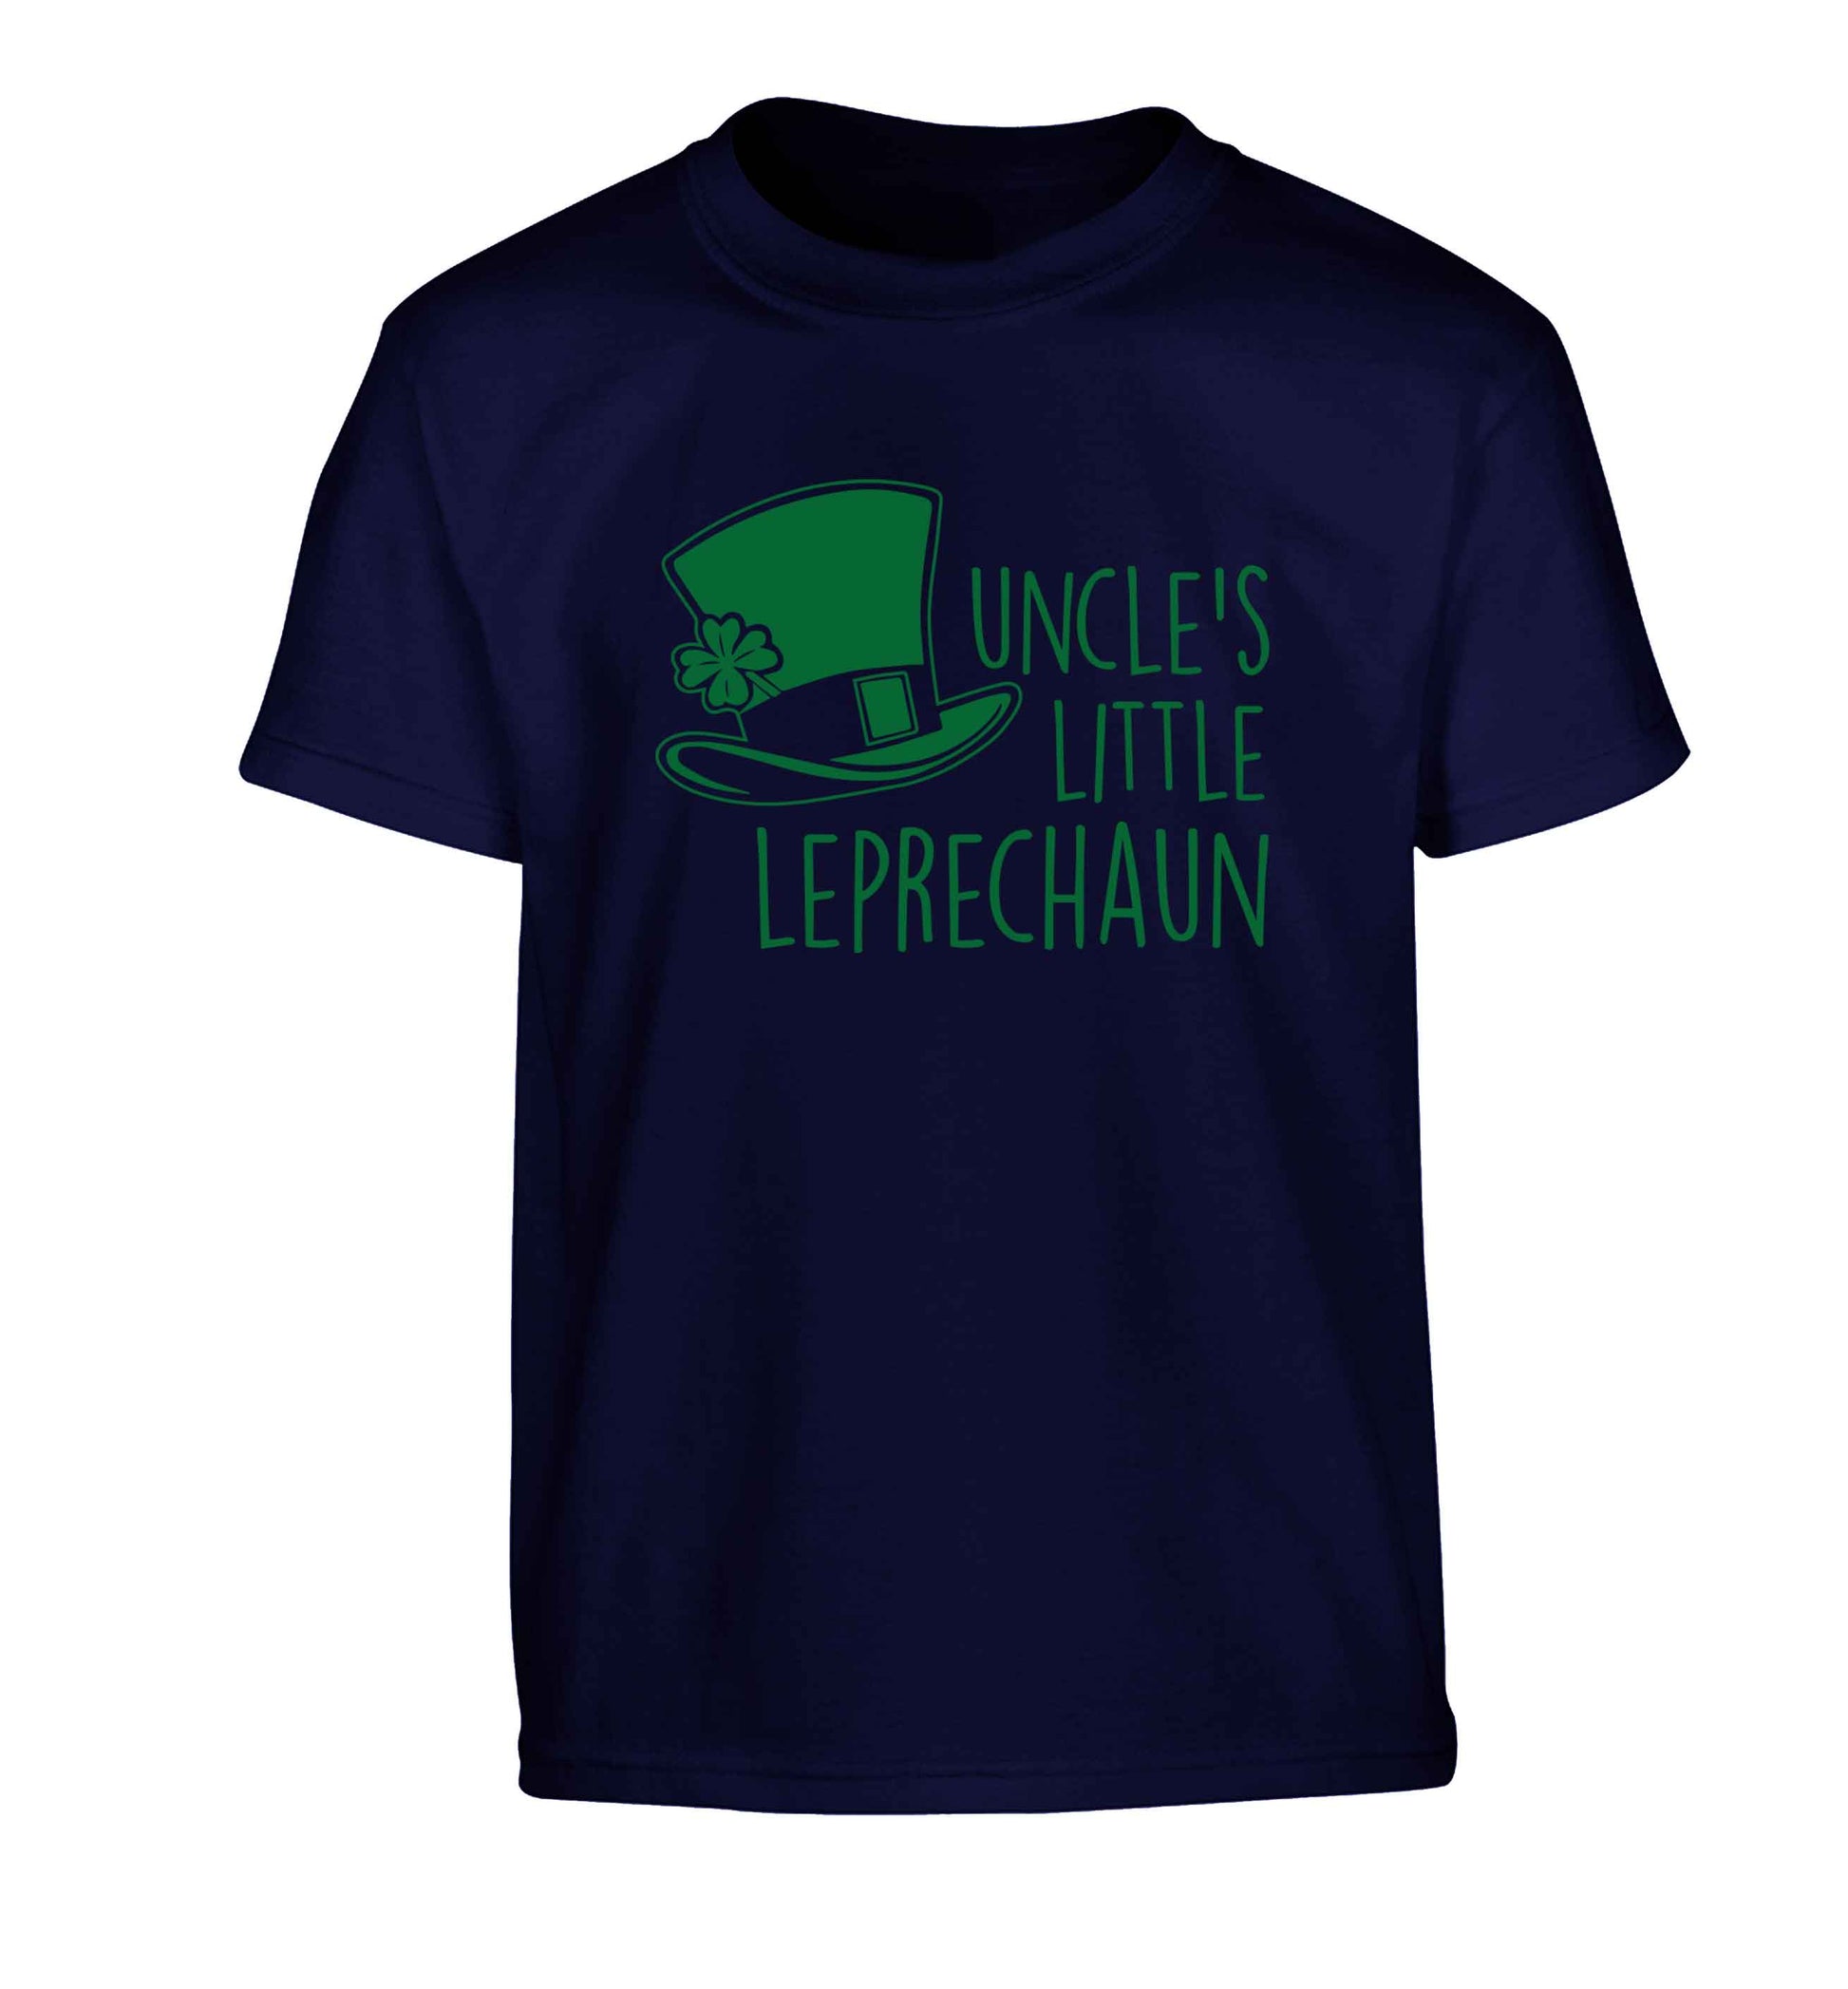 Uncles little leprechaun Children's navy Tshirt 12-13 Years